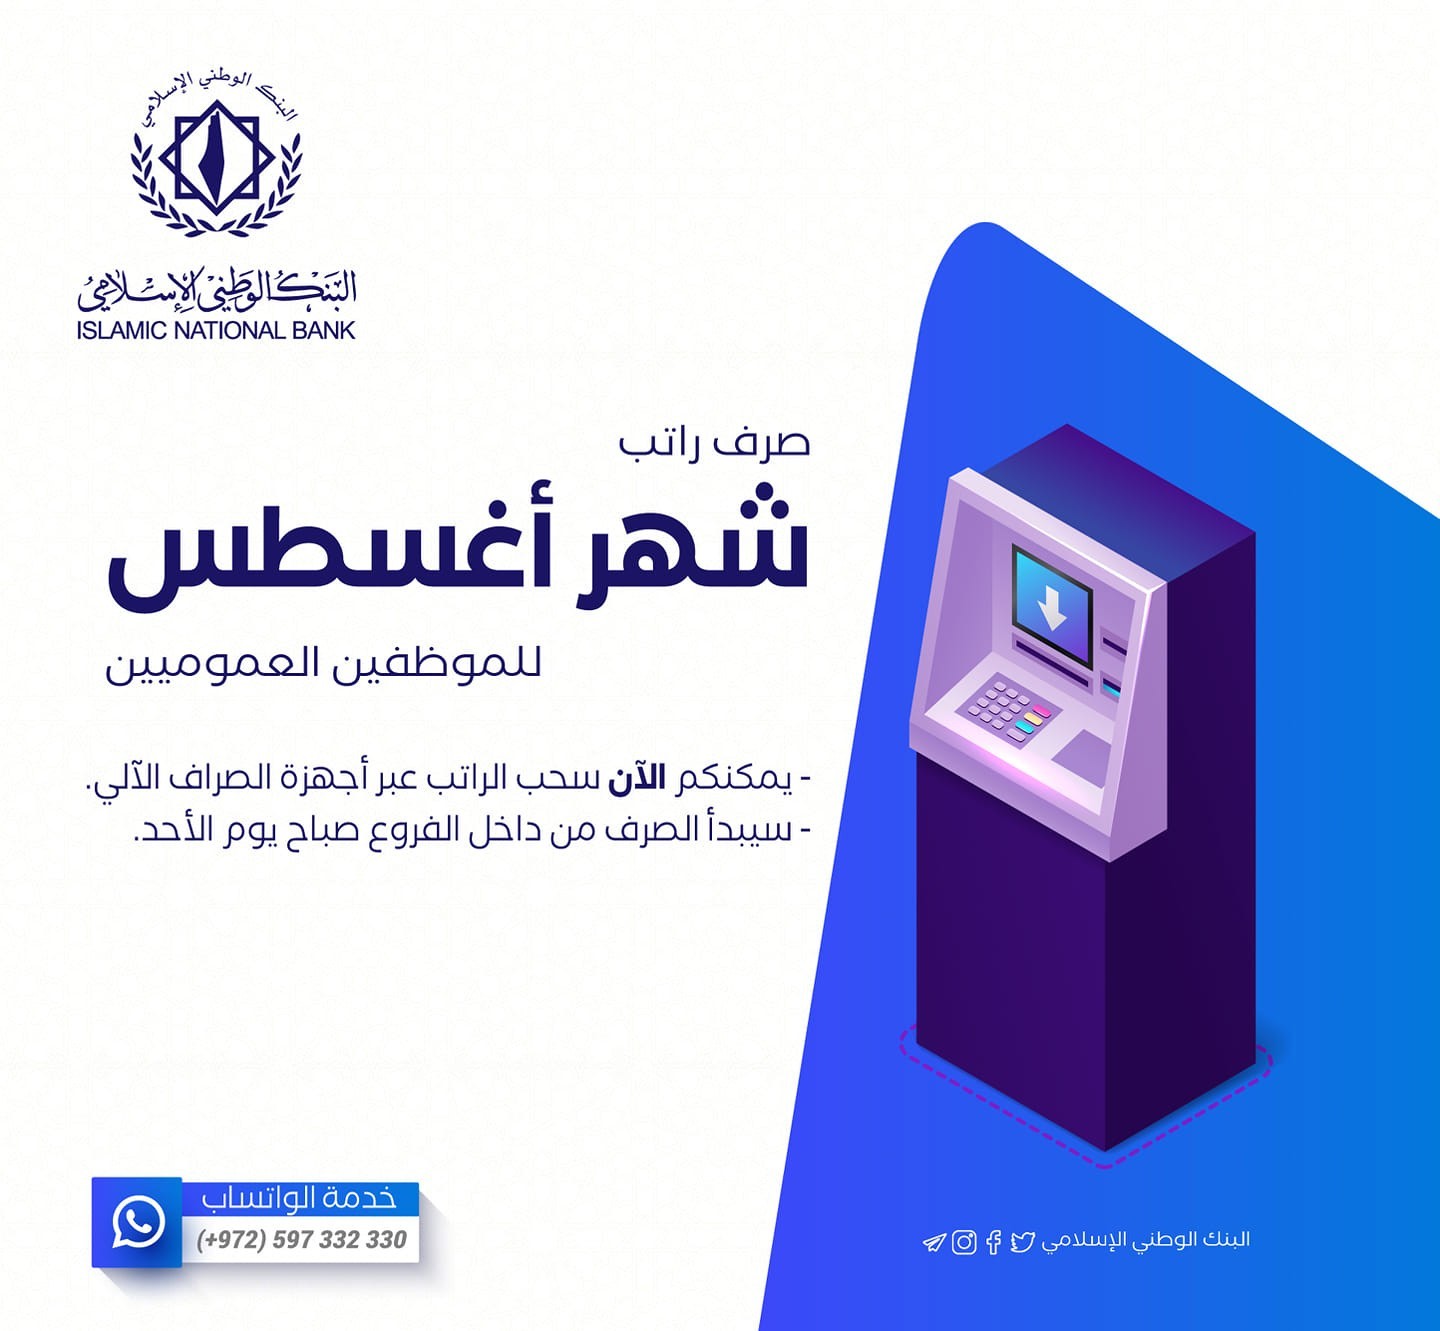 البنك الوطني الإسلامي يُصدر تعميمًا مهمًا بشأن أماكن الصرافات الآلية المتاحة